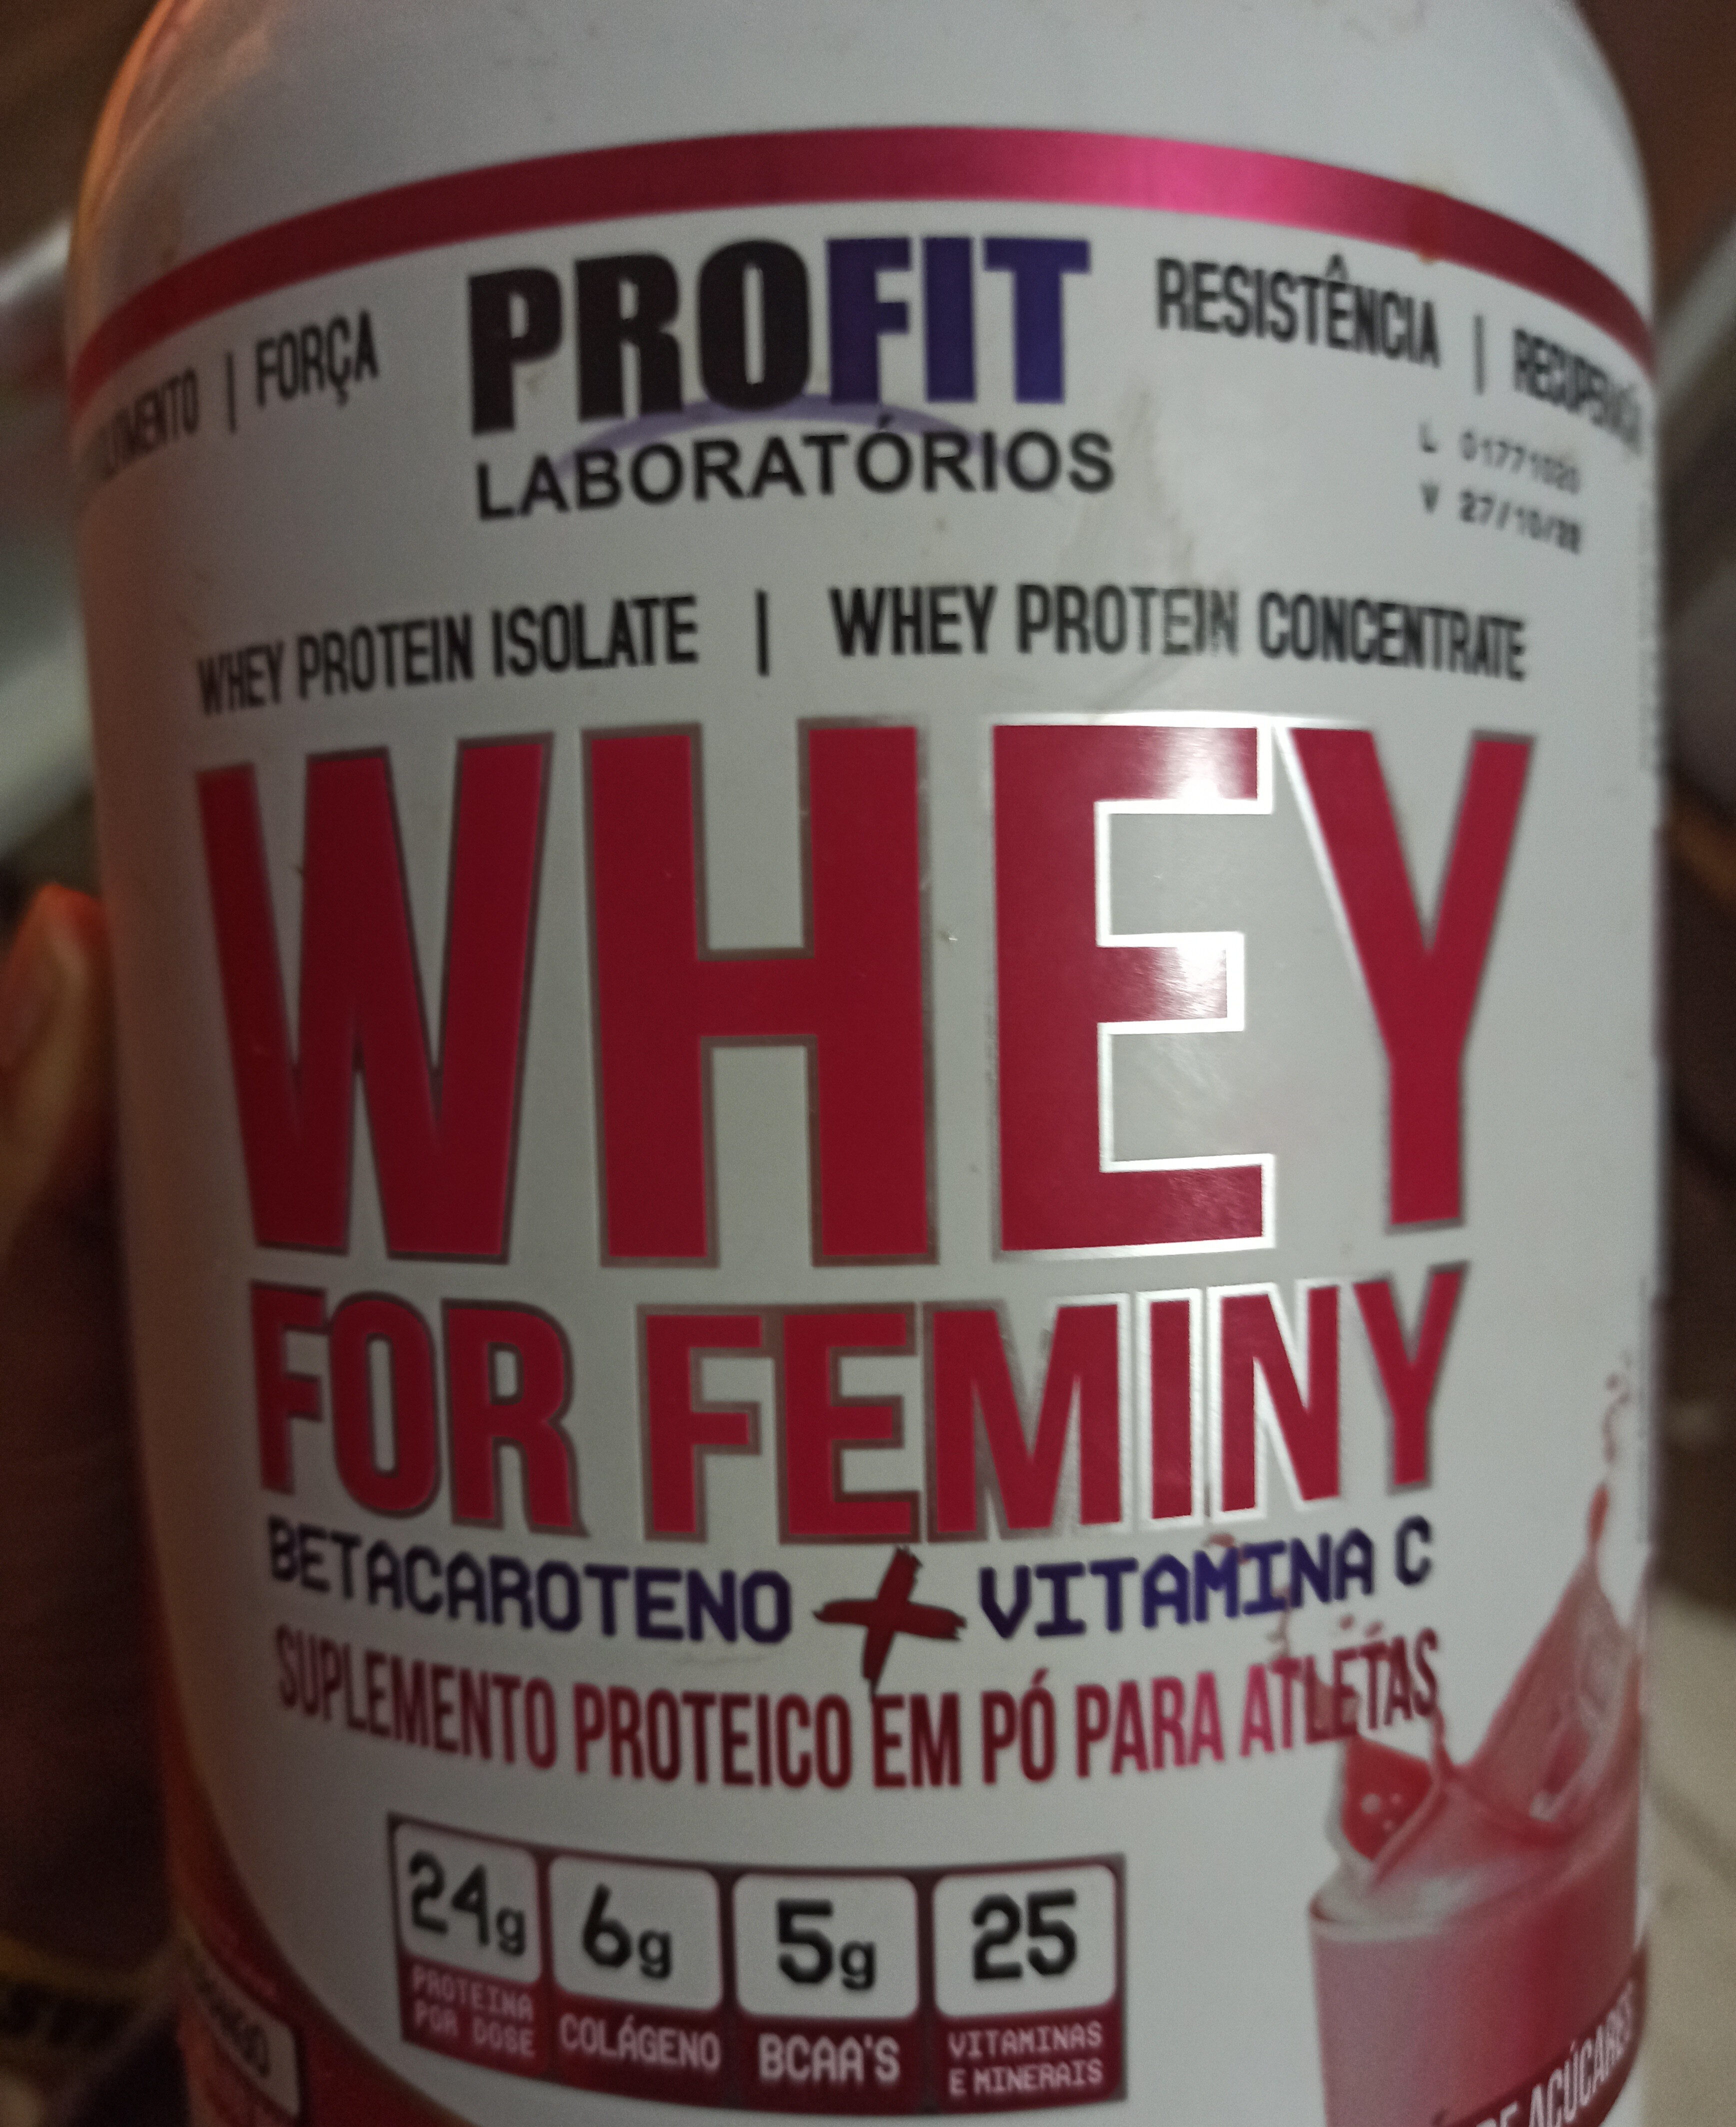 whey for feminy - Produto